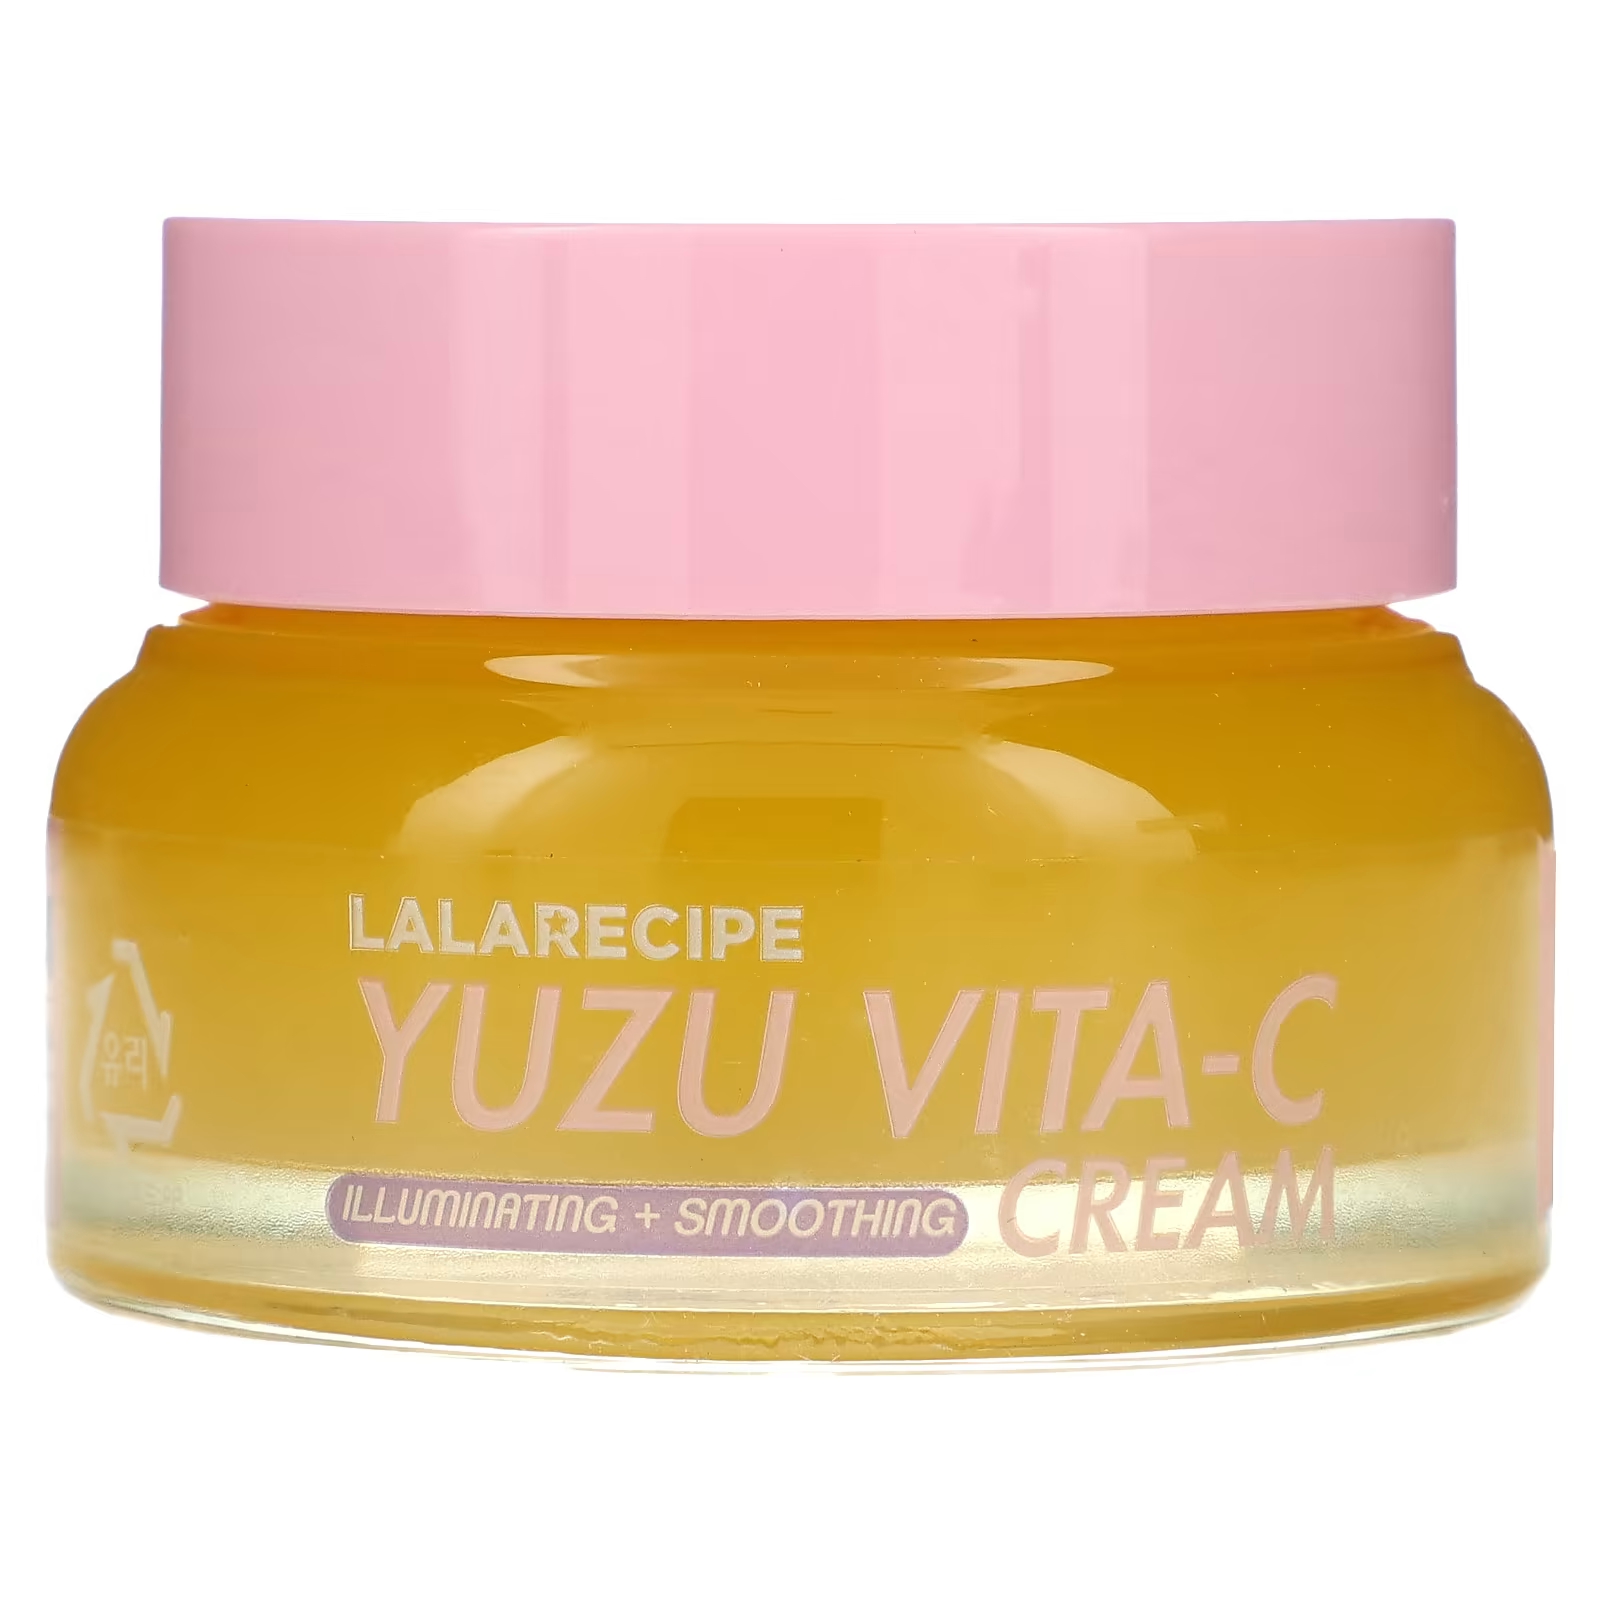 Крем Lalarecipe Yuzu Vita-C, 50 мл крем для лица lalarecipe yuzu vita c cream 50 мл